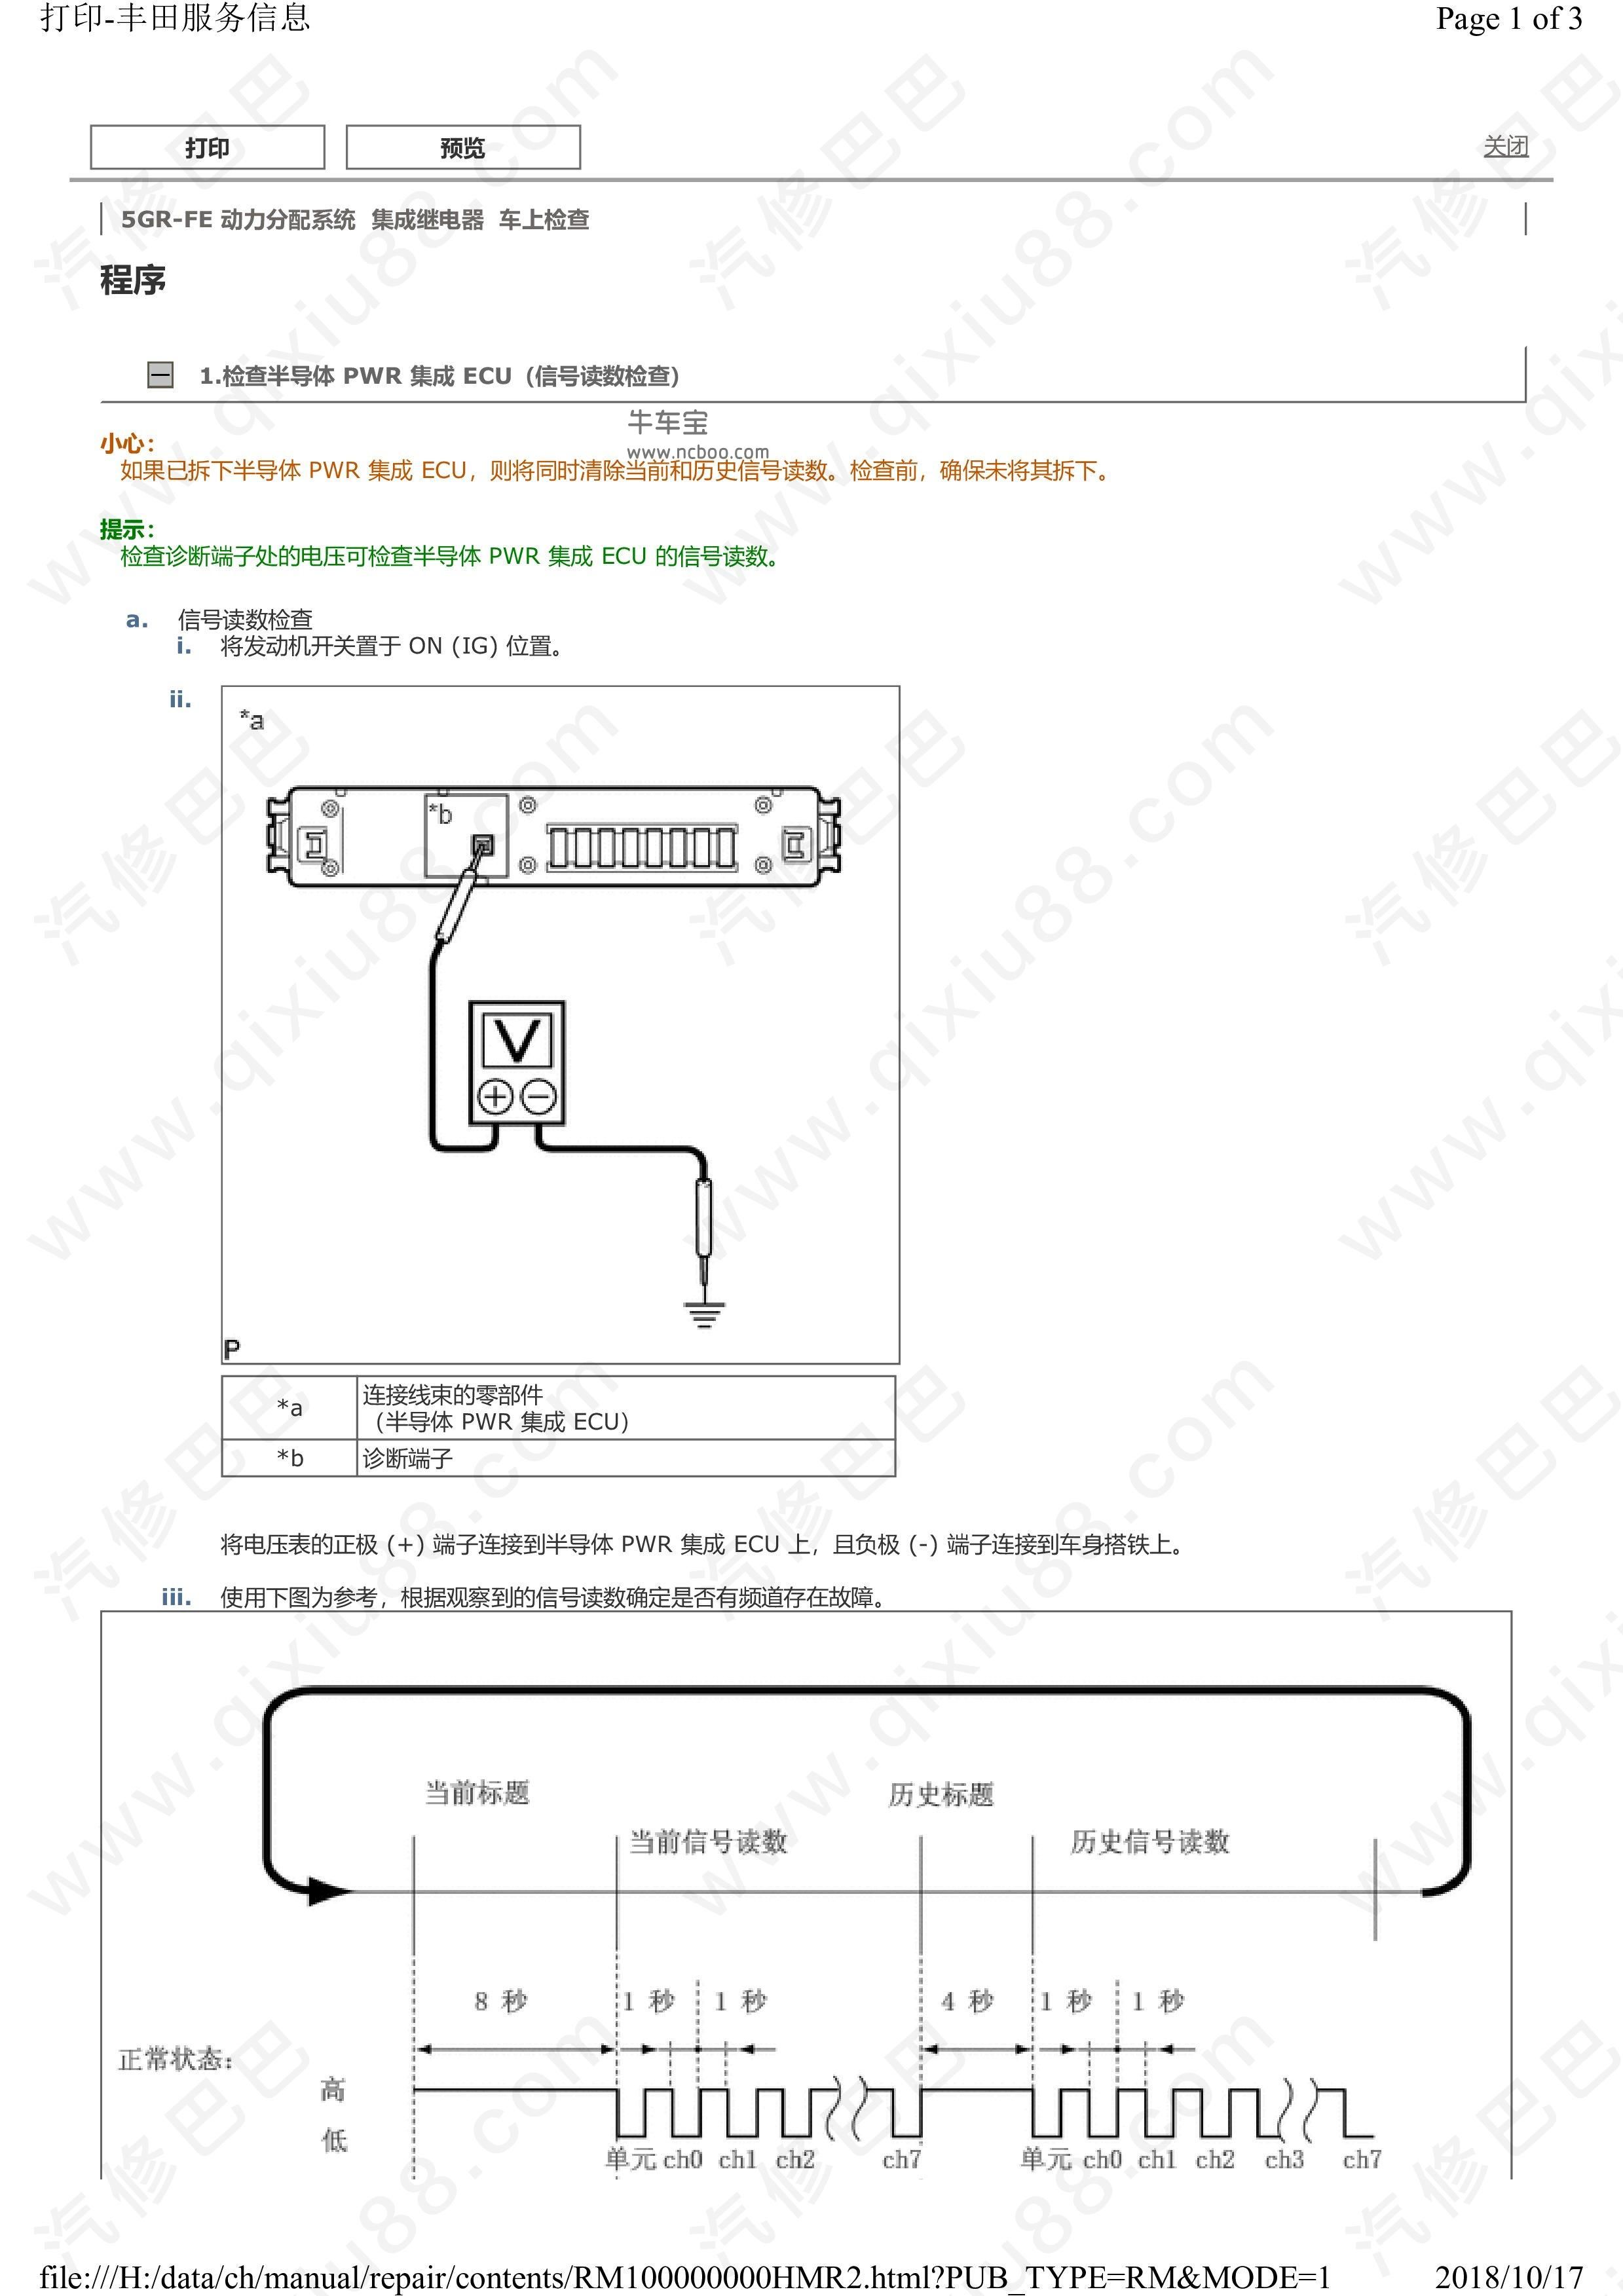 丰田皇冠动力分配ECU系统通信网络维修手册和线路图